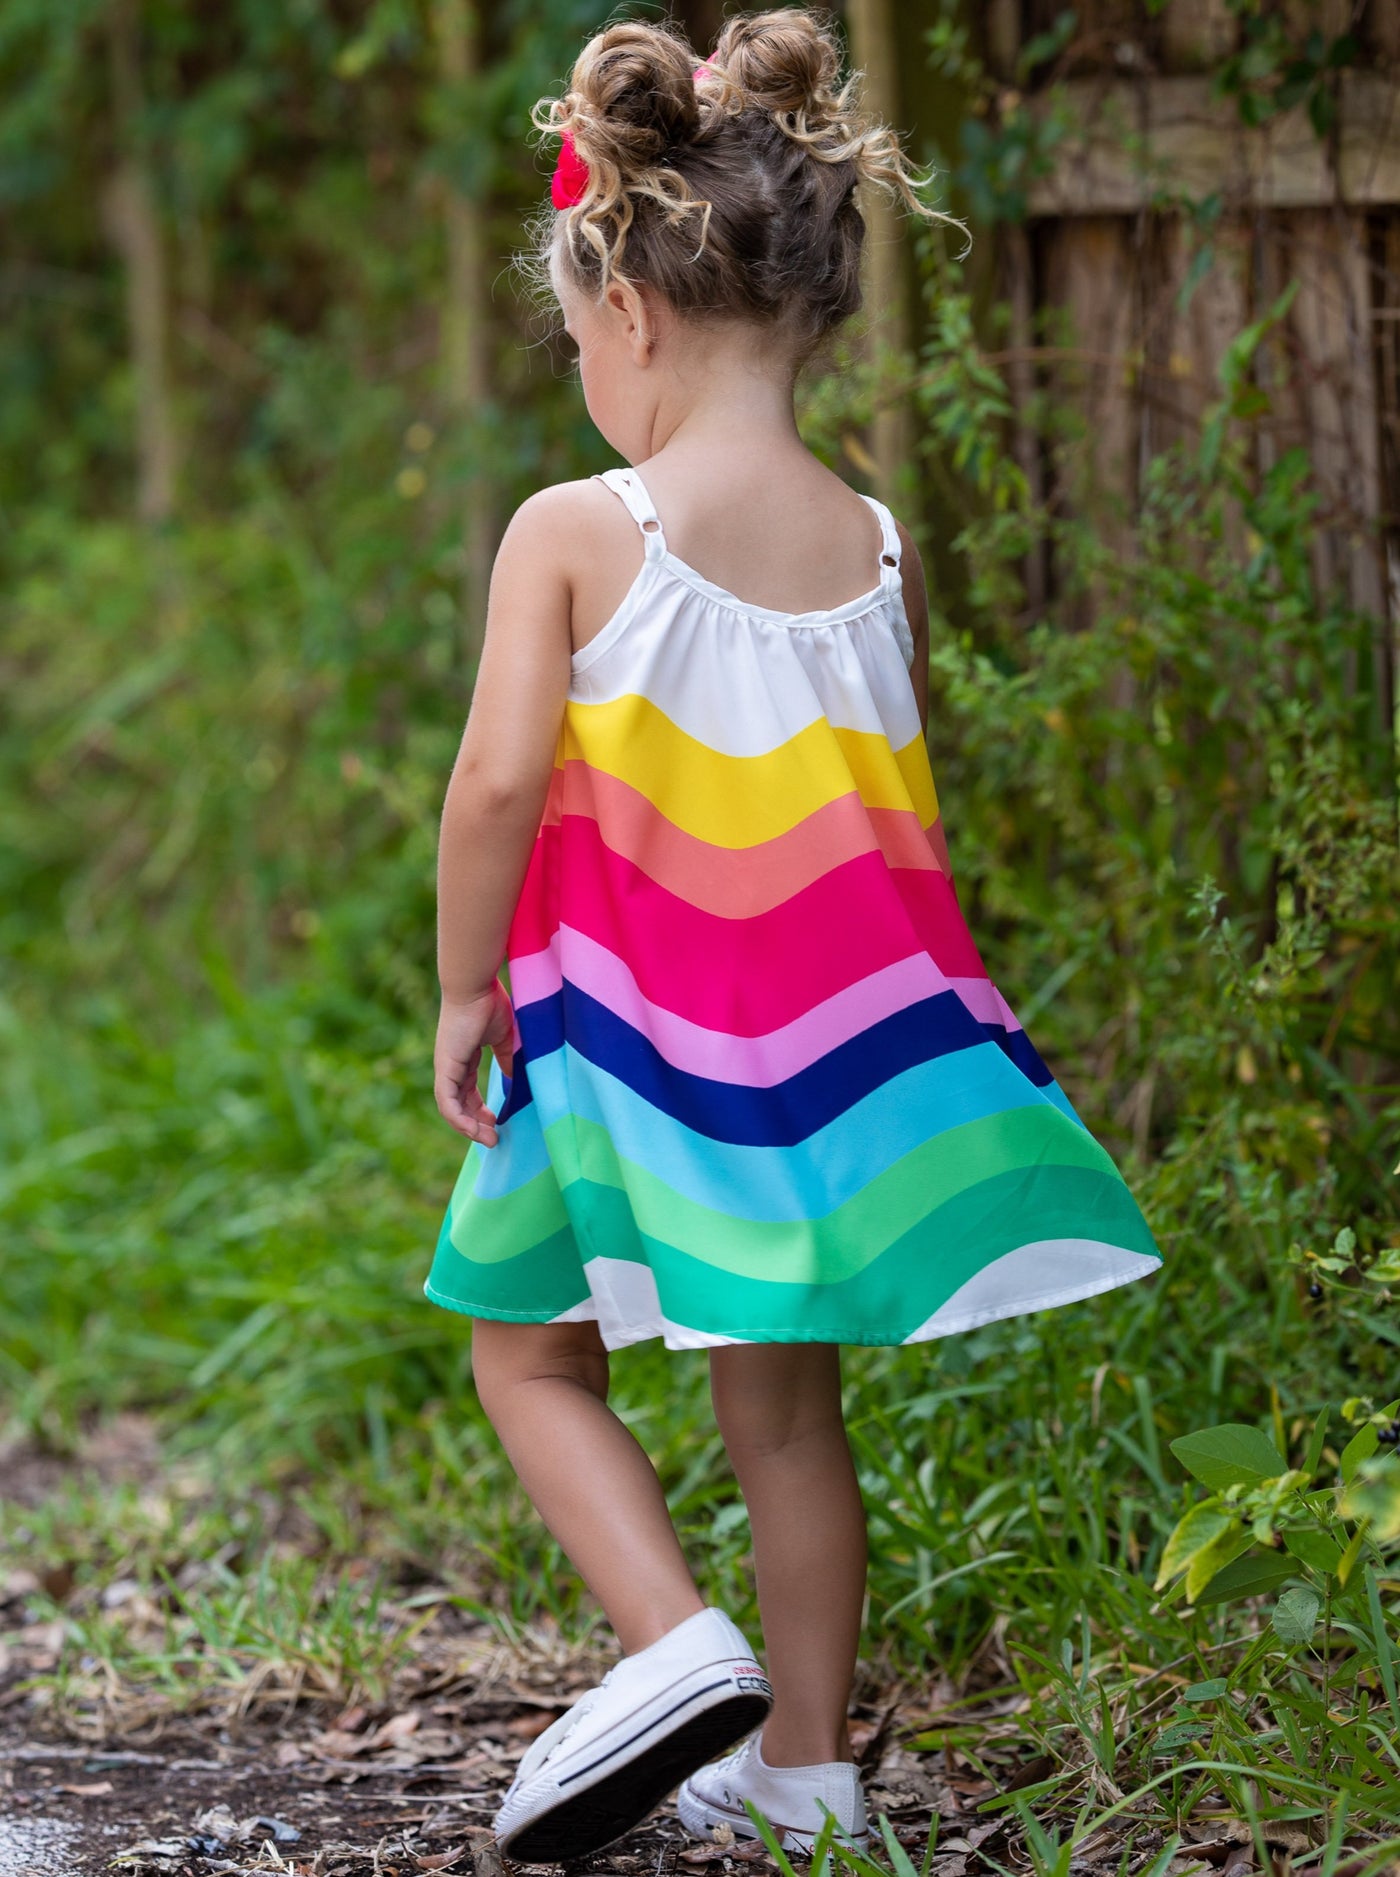 Toddler Spring Dresses | Little Girls Rainbow Stripe Sleeveless Dress